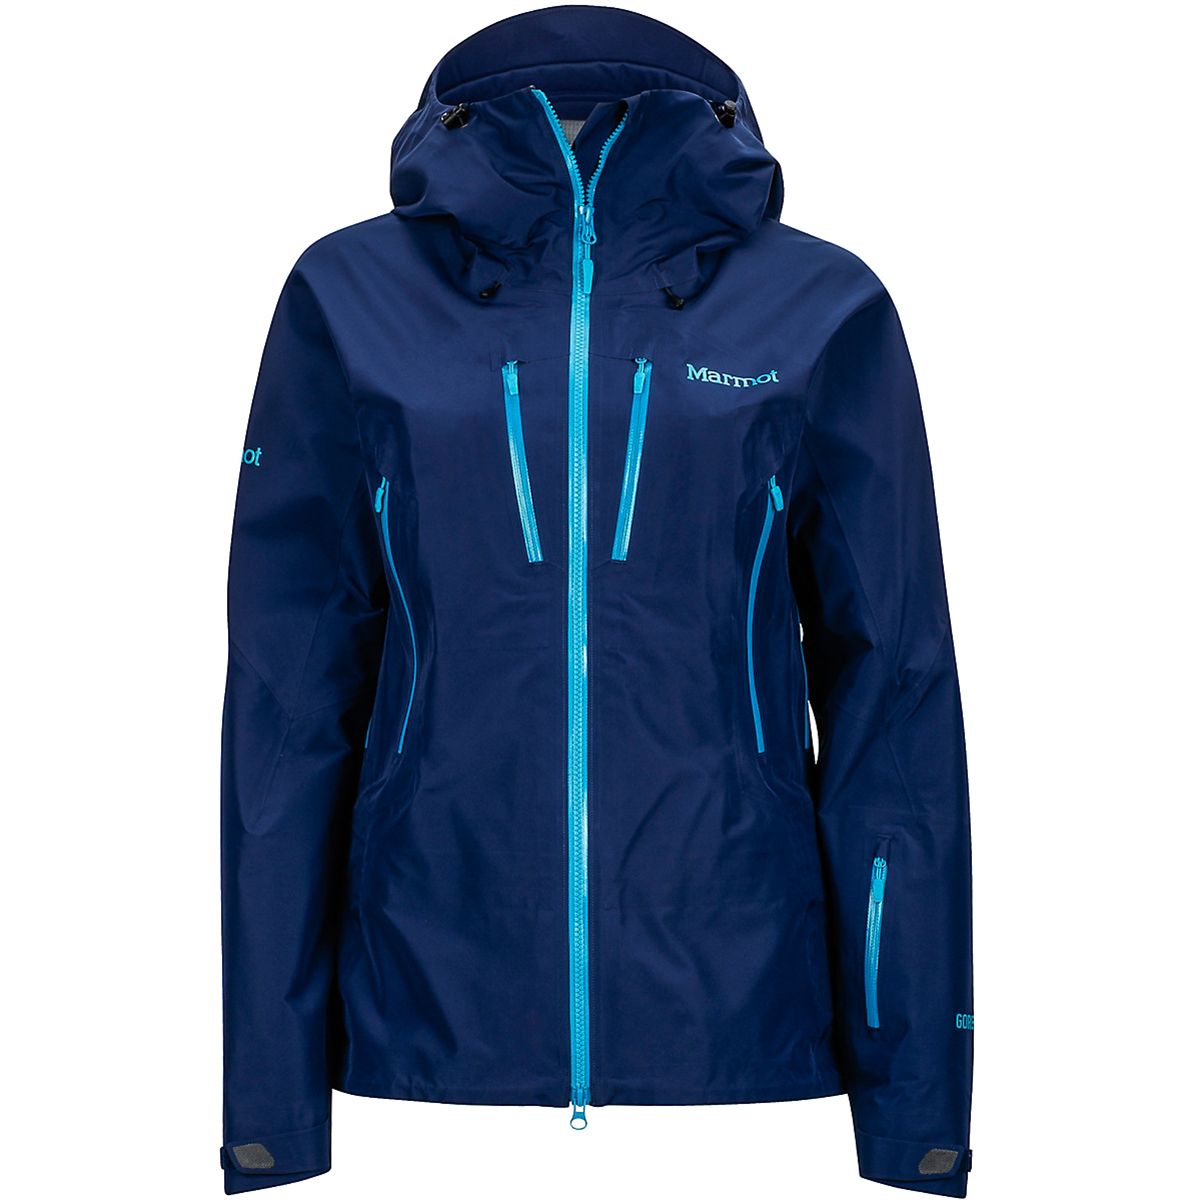 Marmot Alpinist Jacket - Women's - Clothing